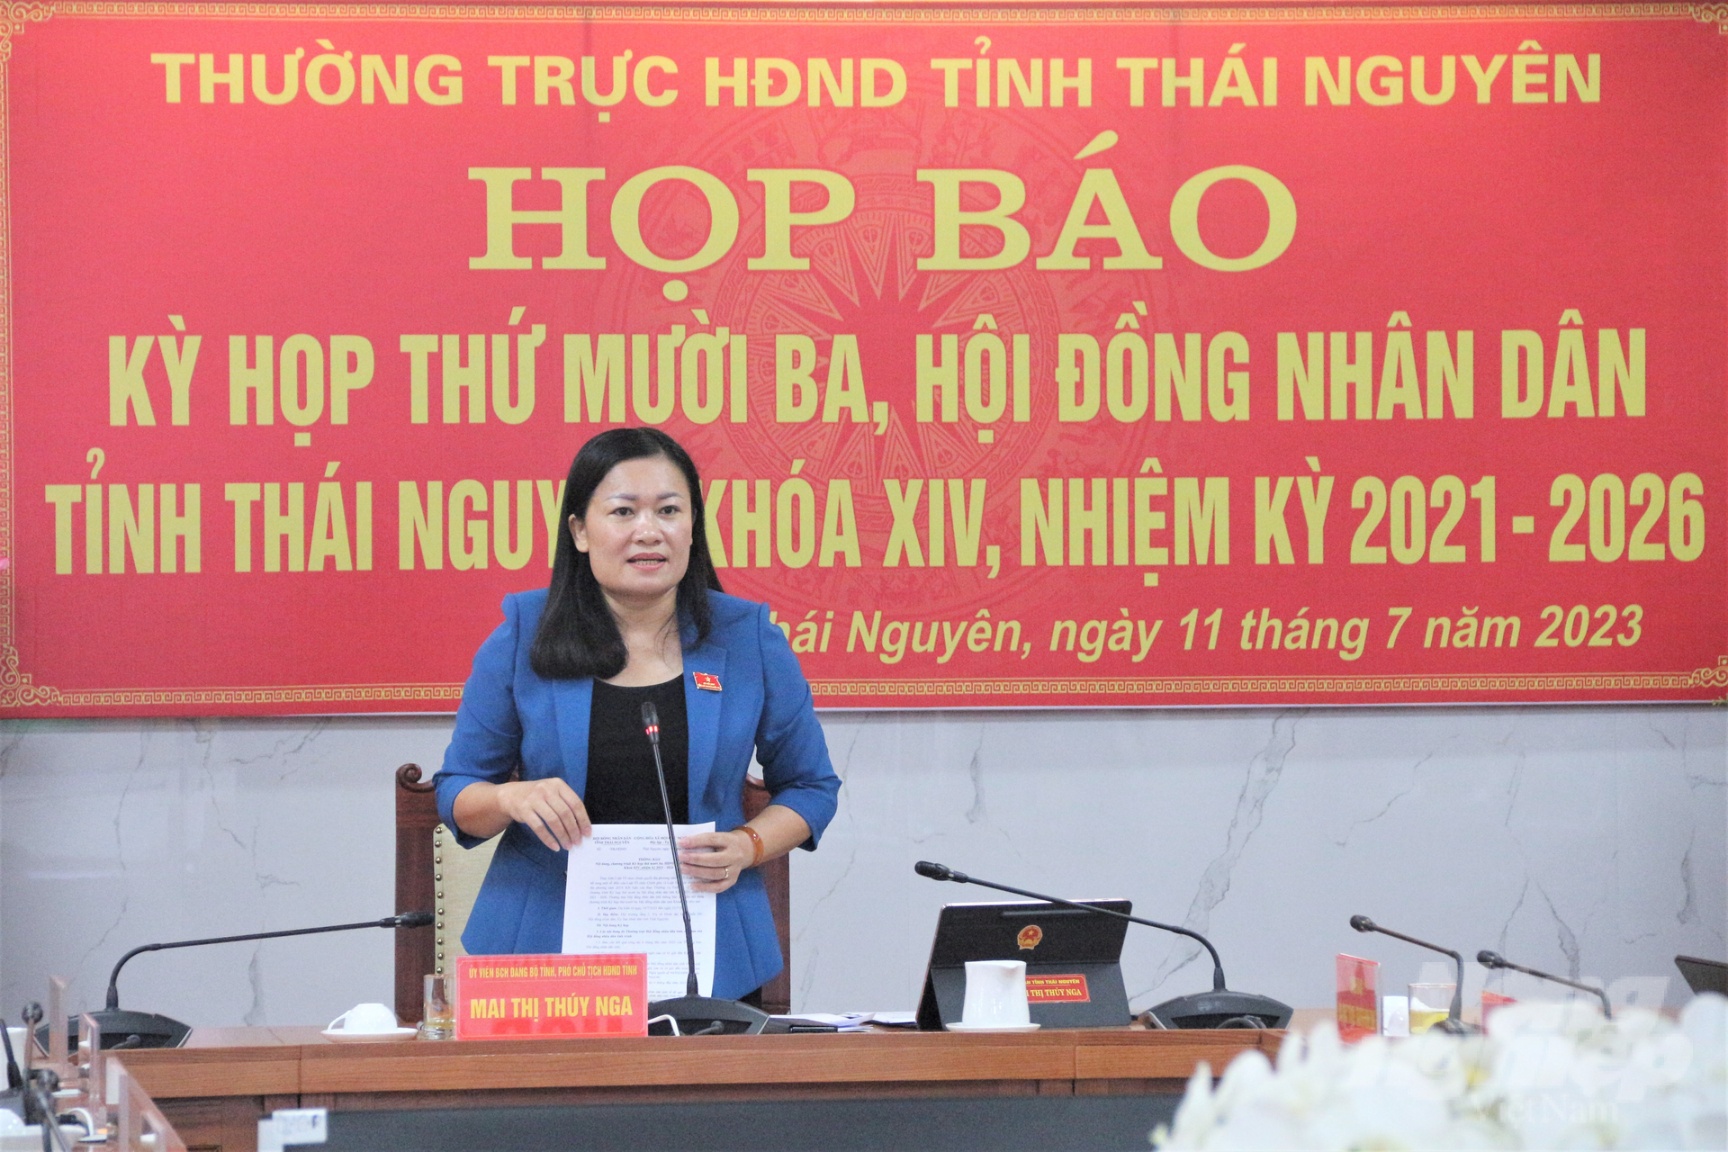 Bà Mai Thị Thúy Nga, Phó Chủ tịch HĐND tỉnh Thái Nguyên, phát biểu tại buổi Họp báo. Ảnh: Phạm Hiếu.